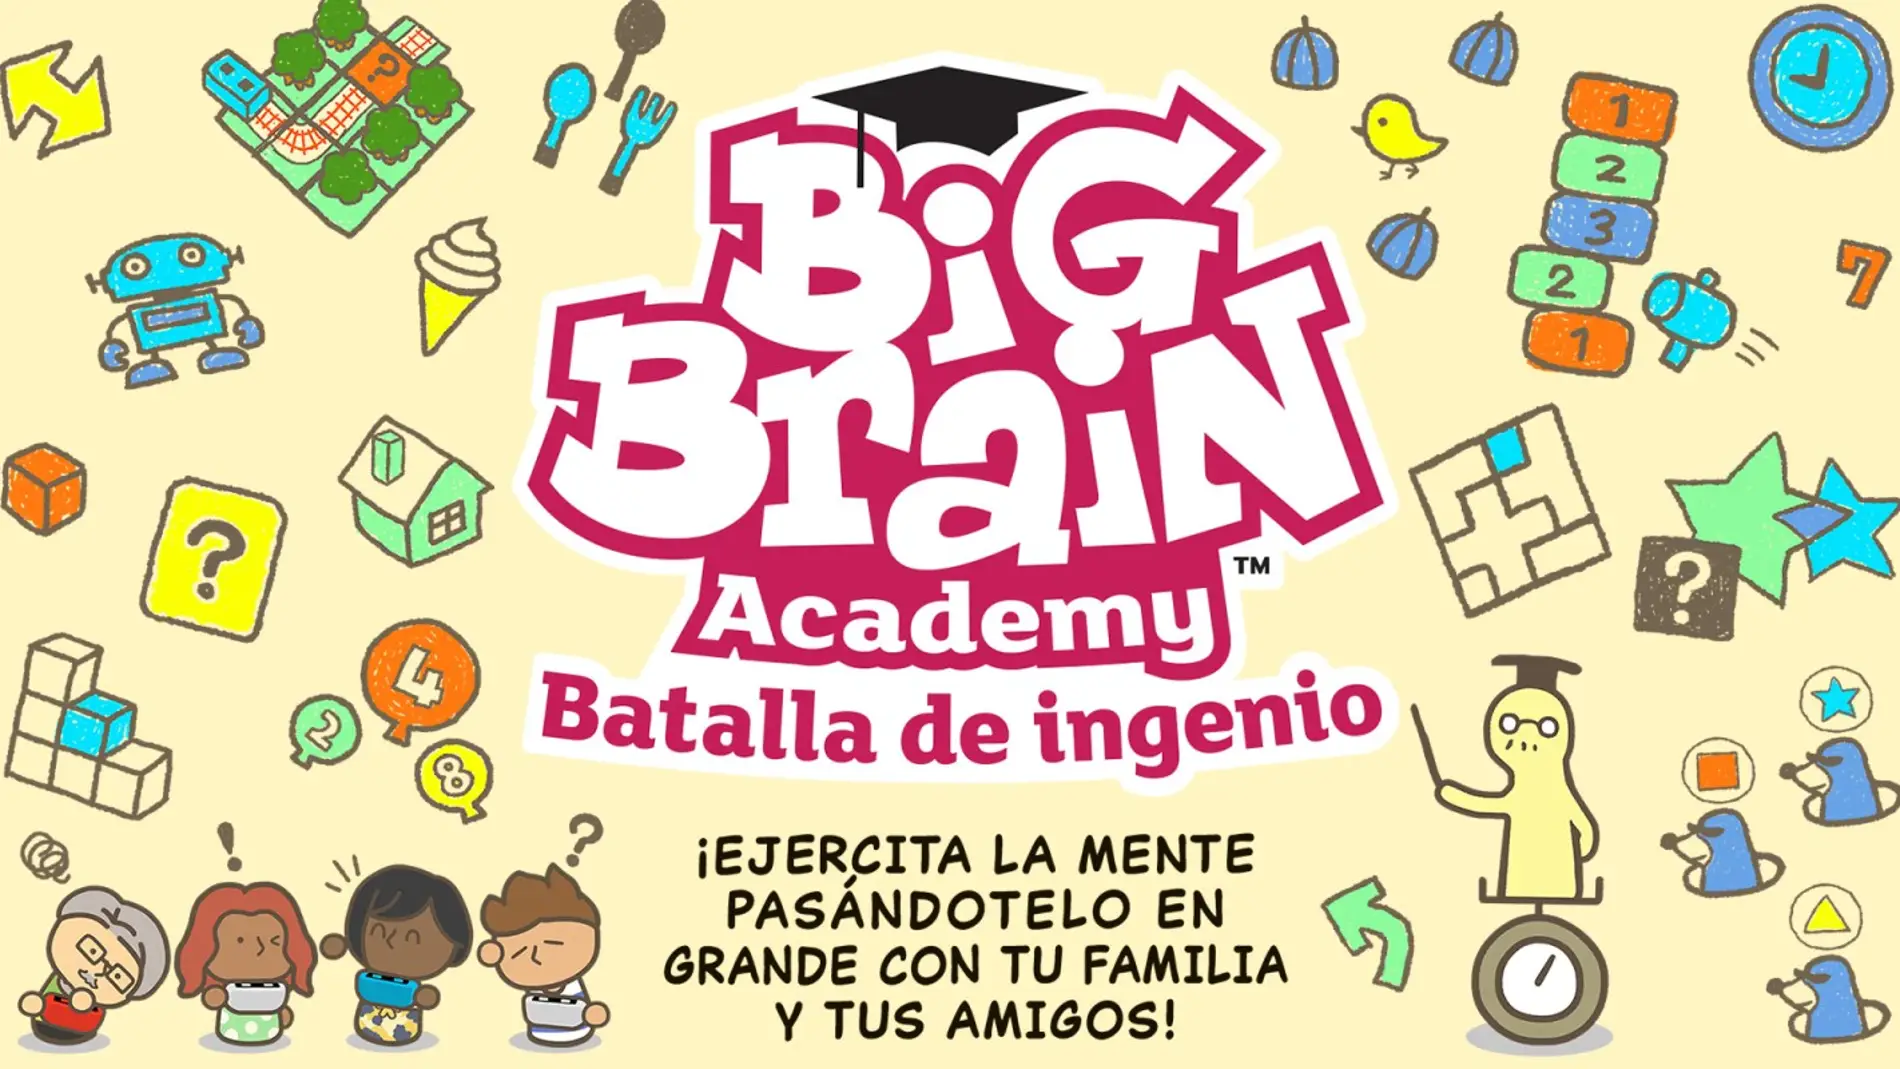 Big Brain Academy: Batalla de Ingenio